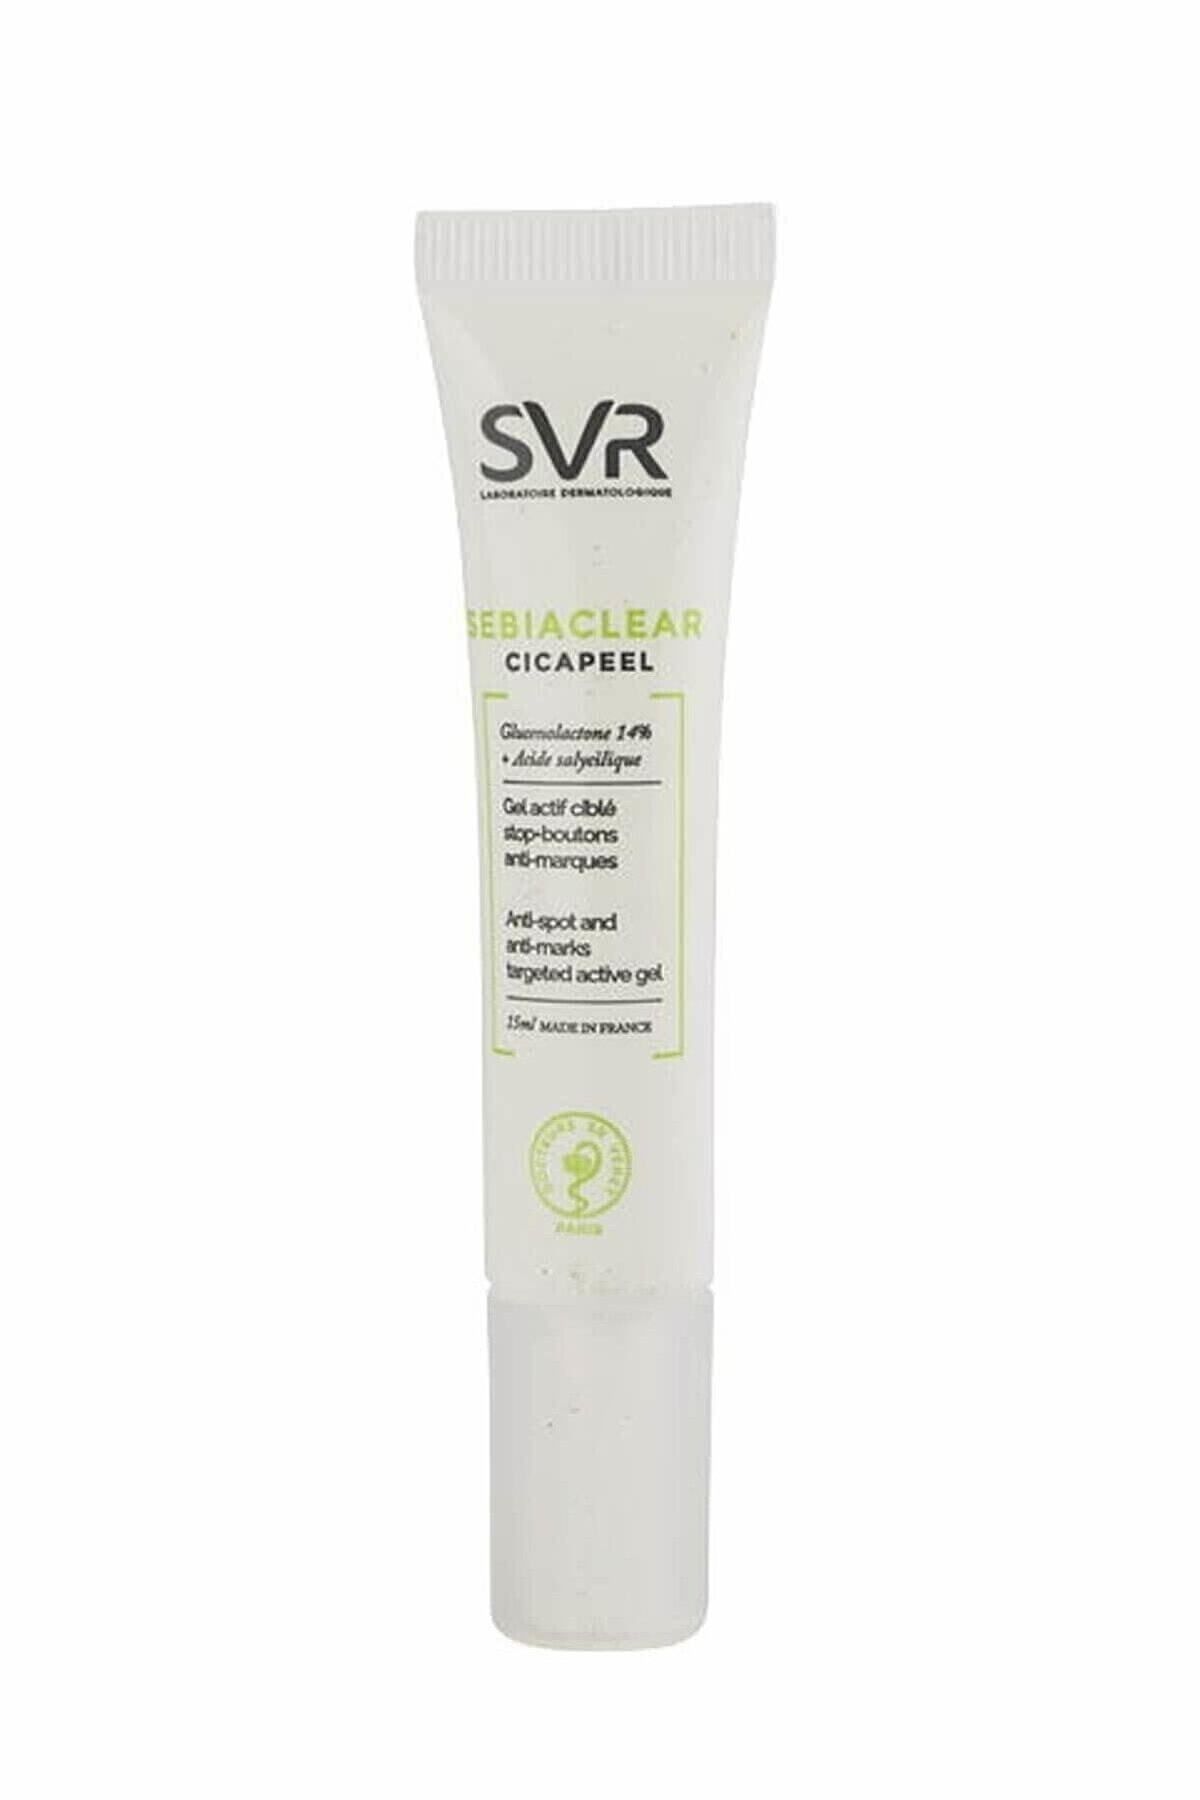 SVR Akne Izlerini Azaltmaya Yardımcı Jel Krem - Sebiaclear Cicapeel Cream 15 ml